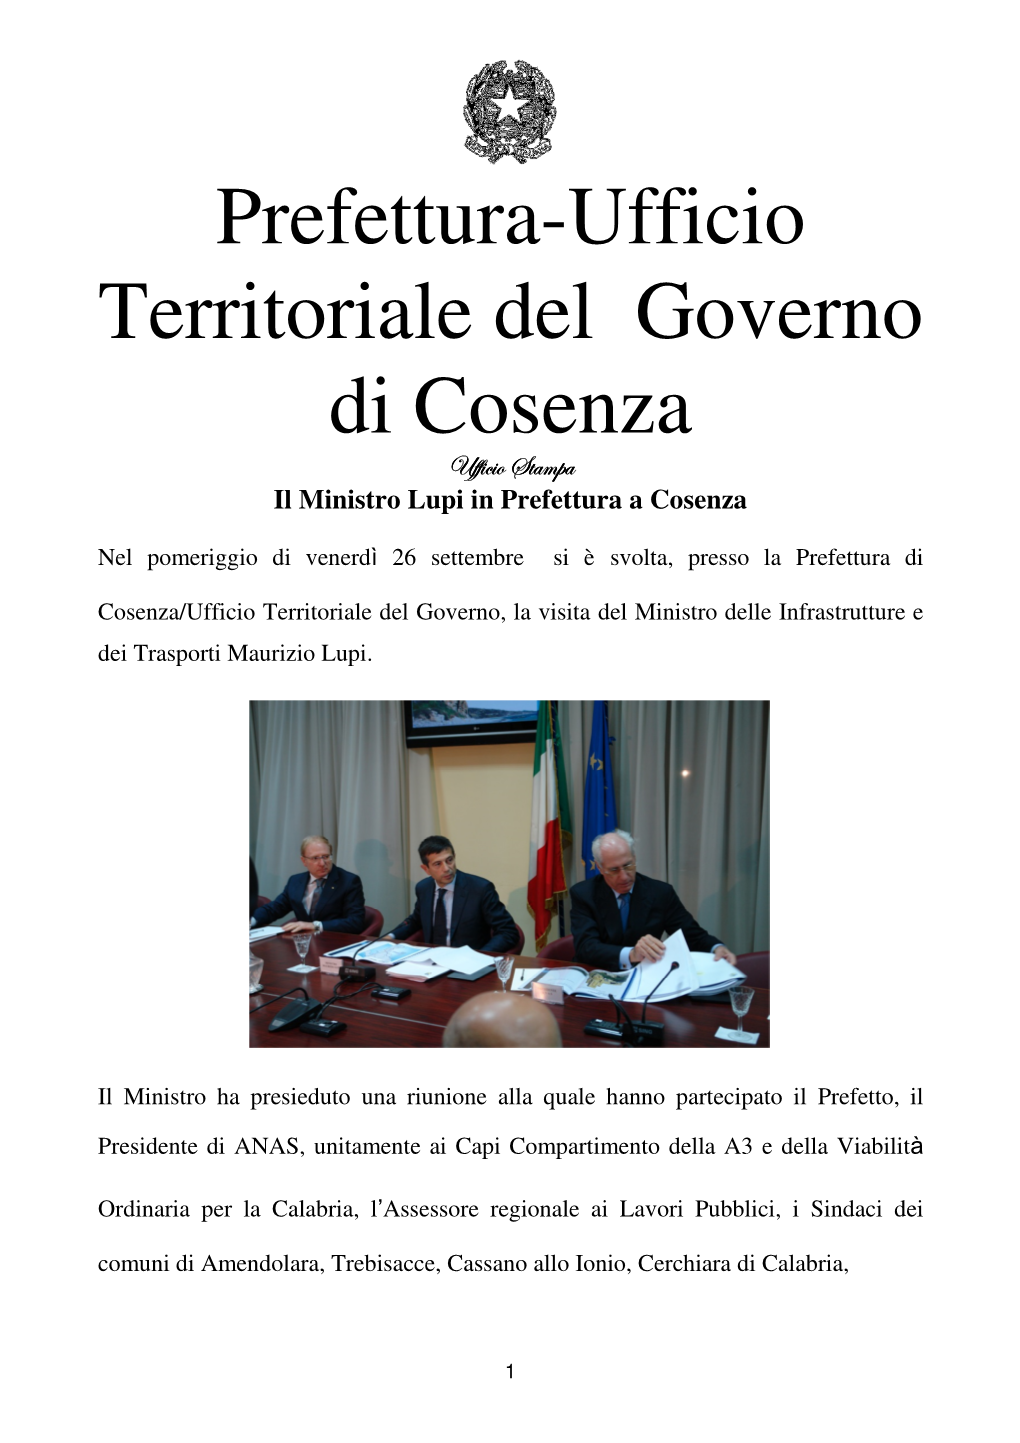 Prefettura-Ufficio Territoriale Del Governo Di Cosenza